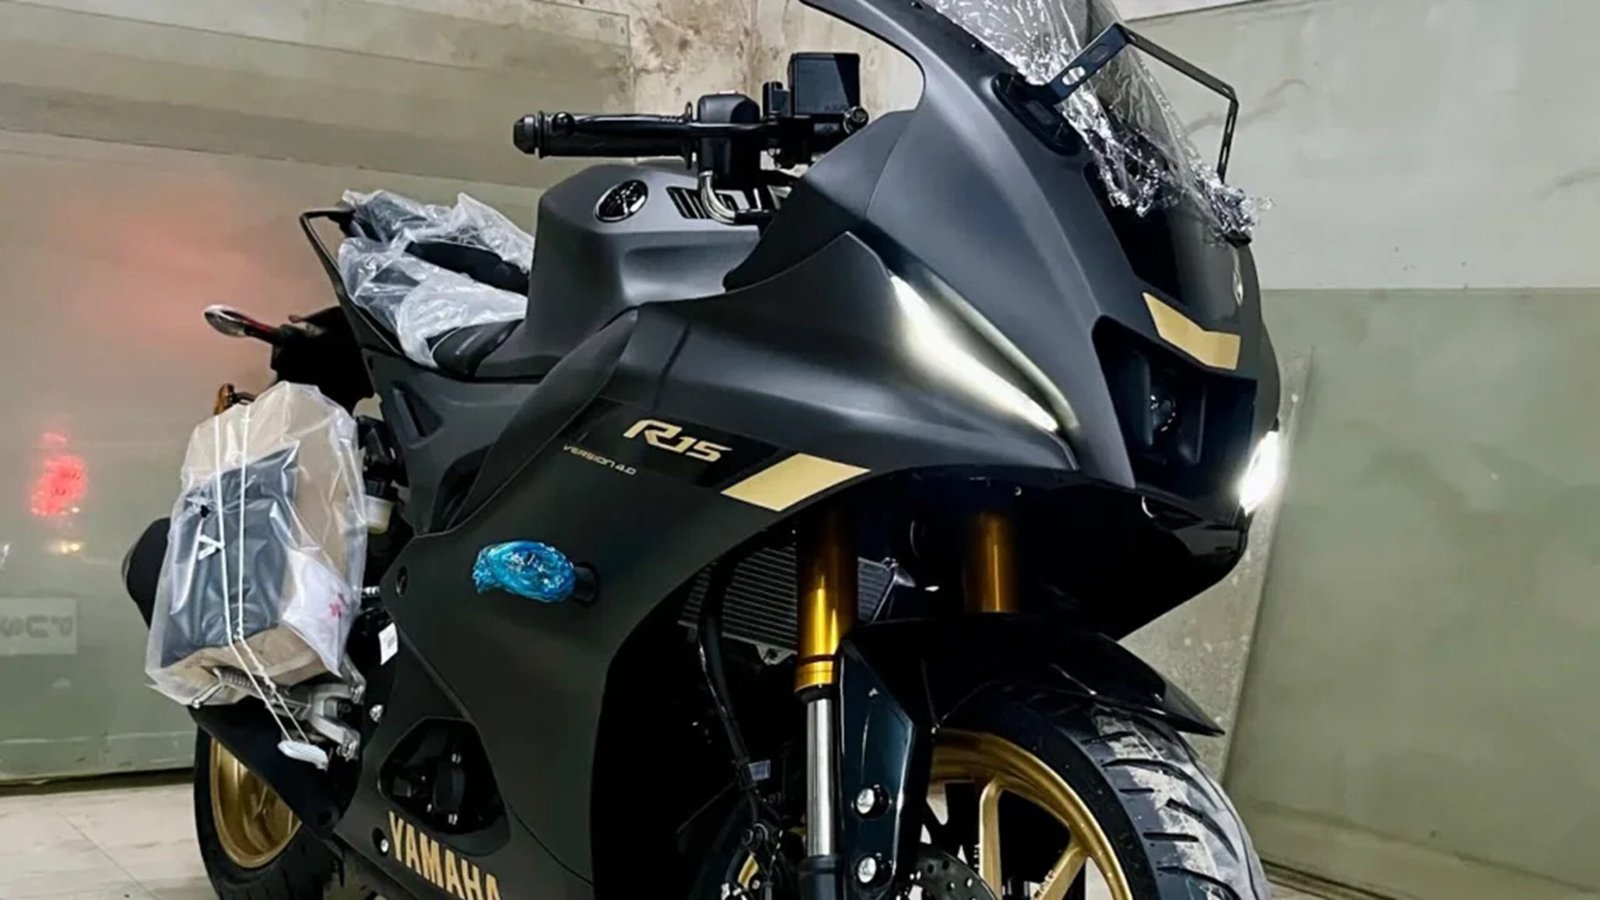 Yamaha Bikes - यामाहा की इन बाइक का नया वैरिएंट हुआ लॉन्च, जानिए स्पेसिफिकेशन और कीमत,